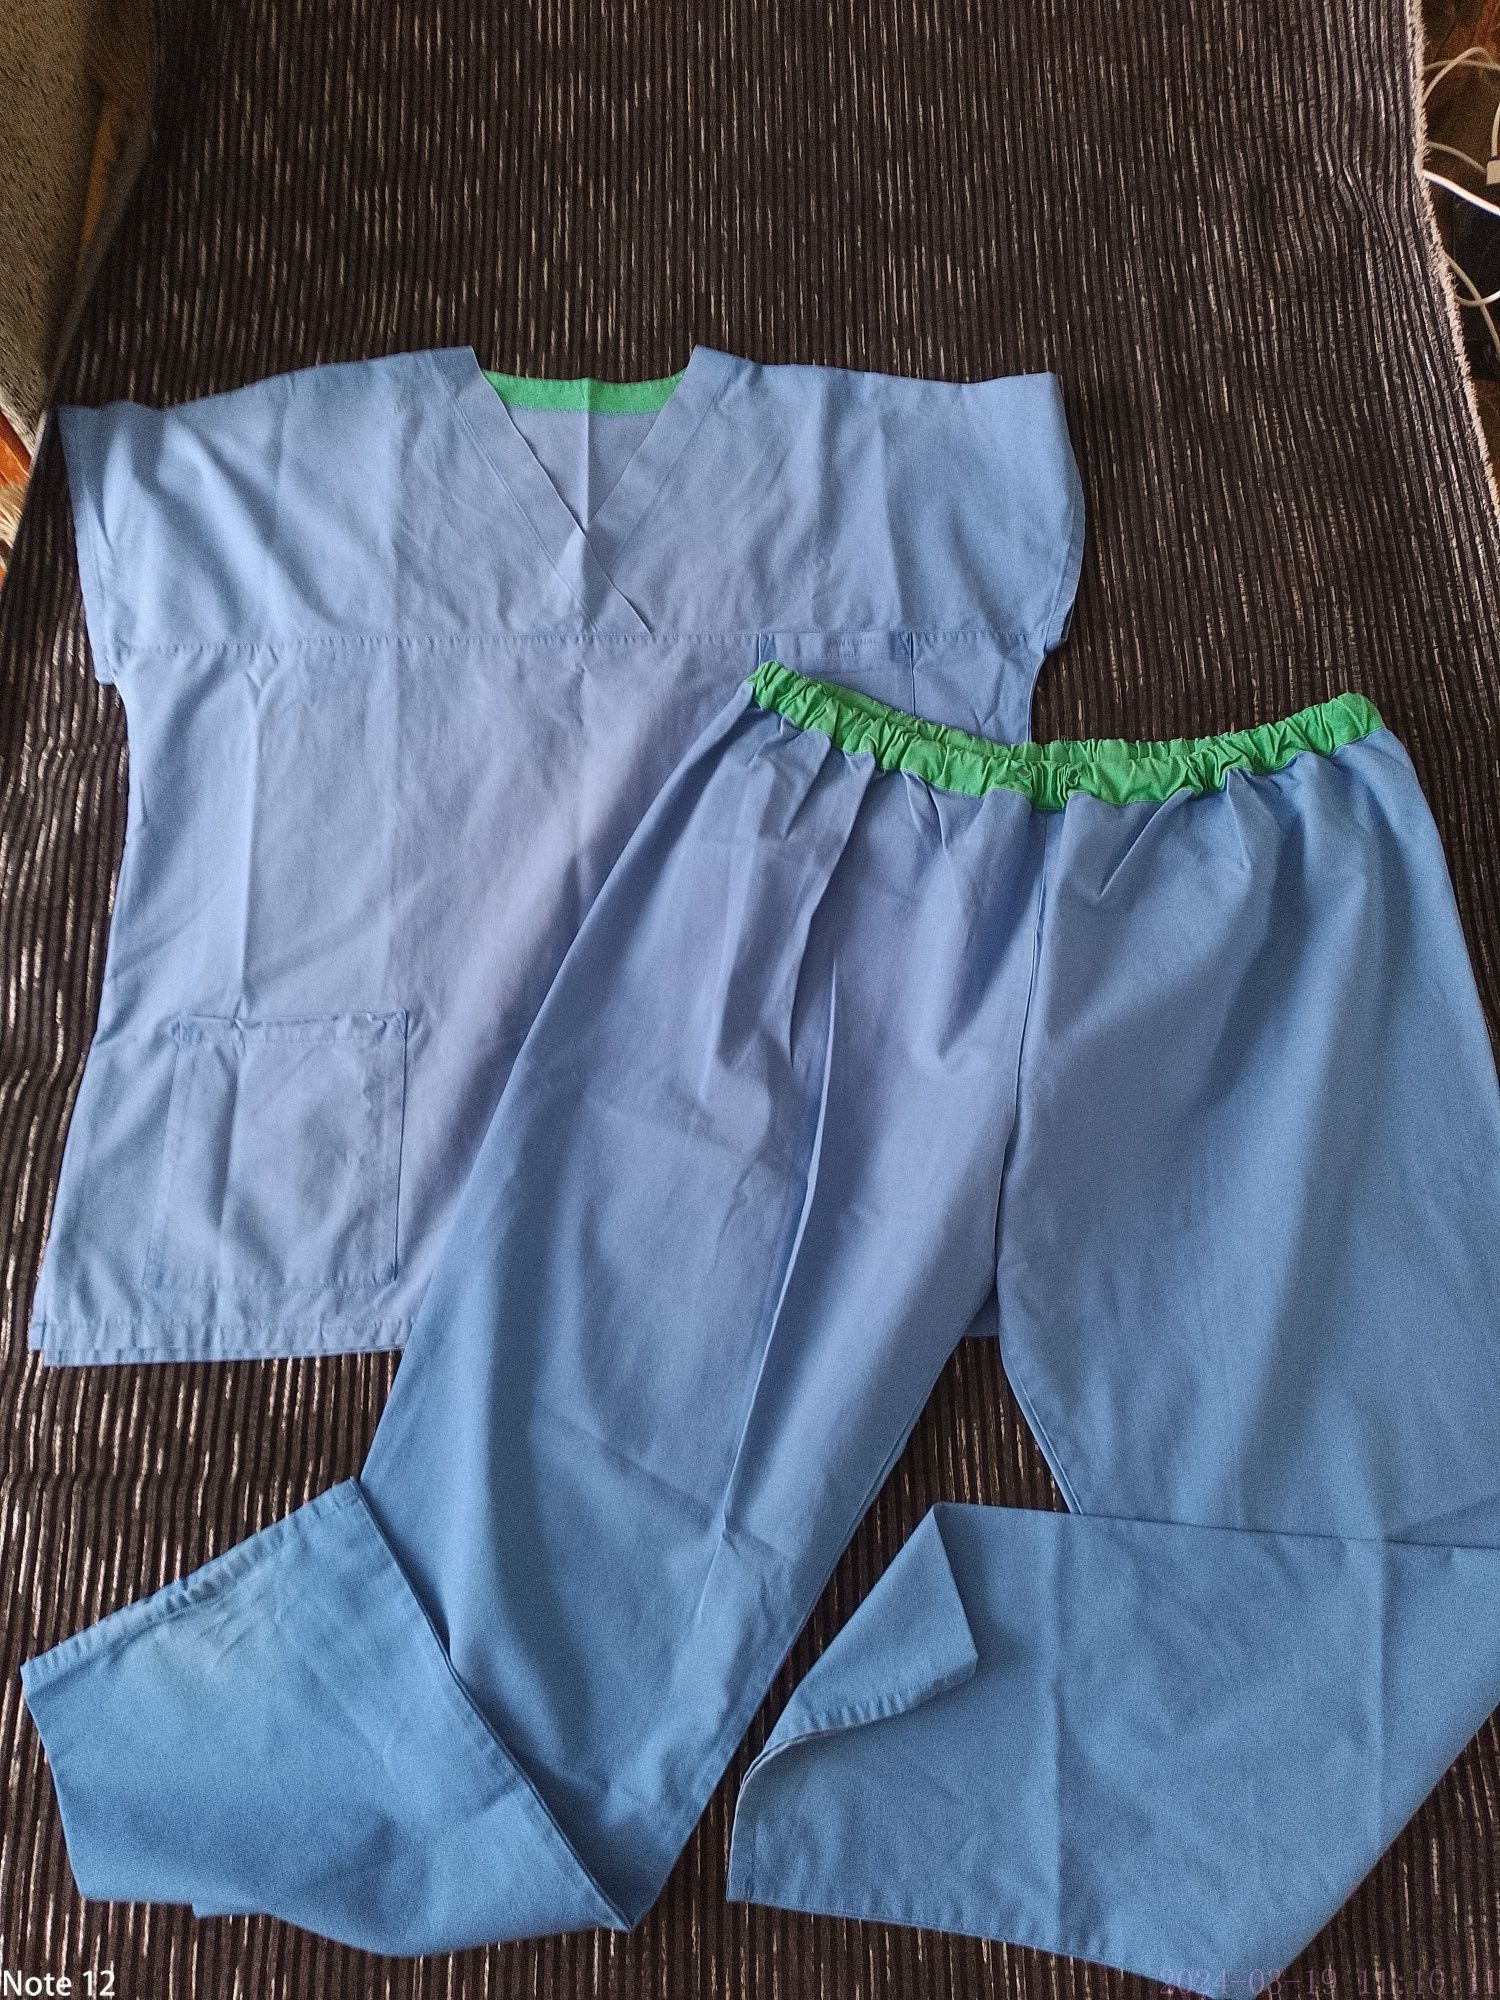 Хирургический,операционный мужской медицинский костюм XL